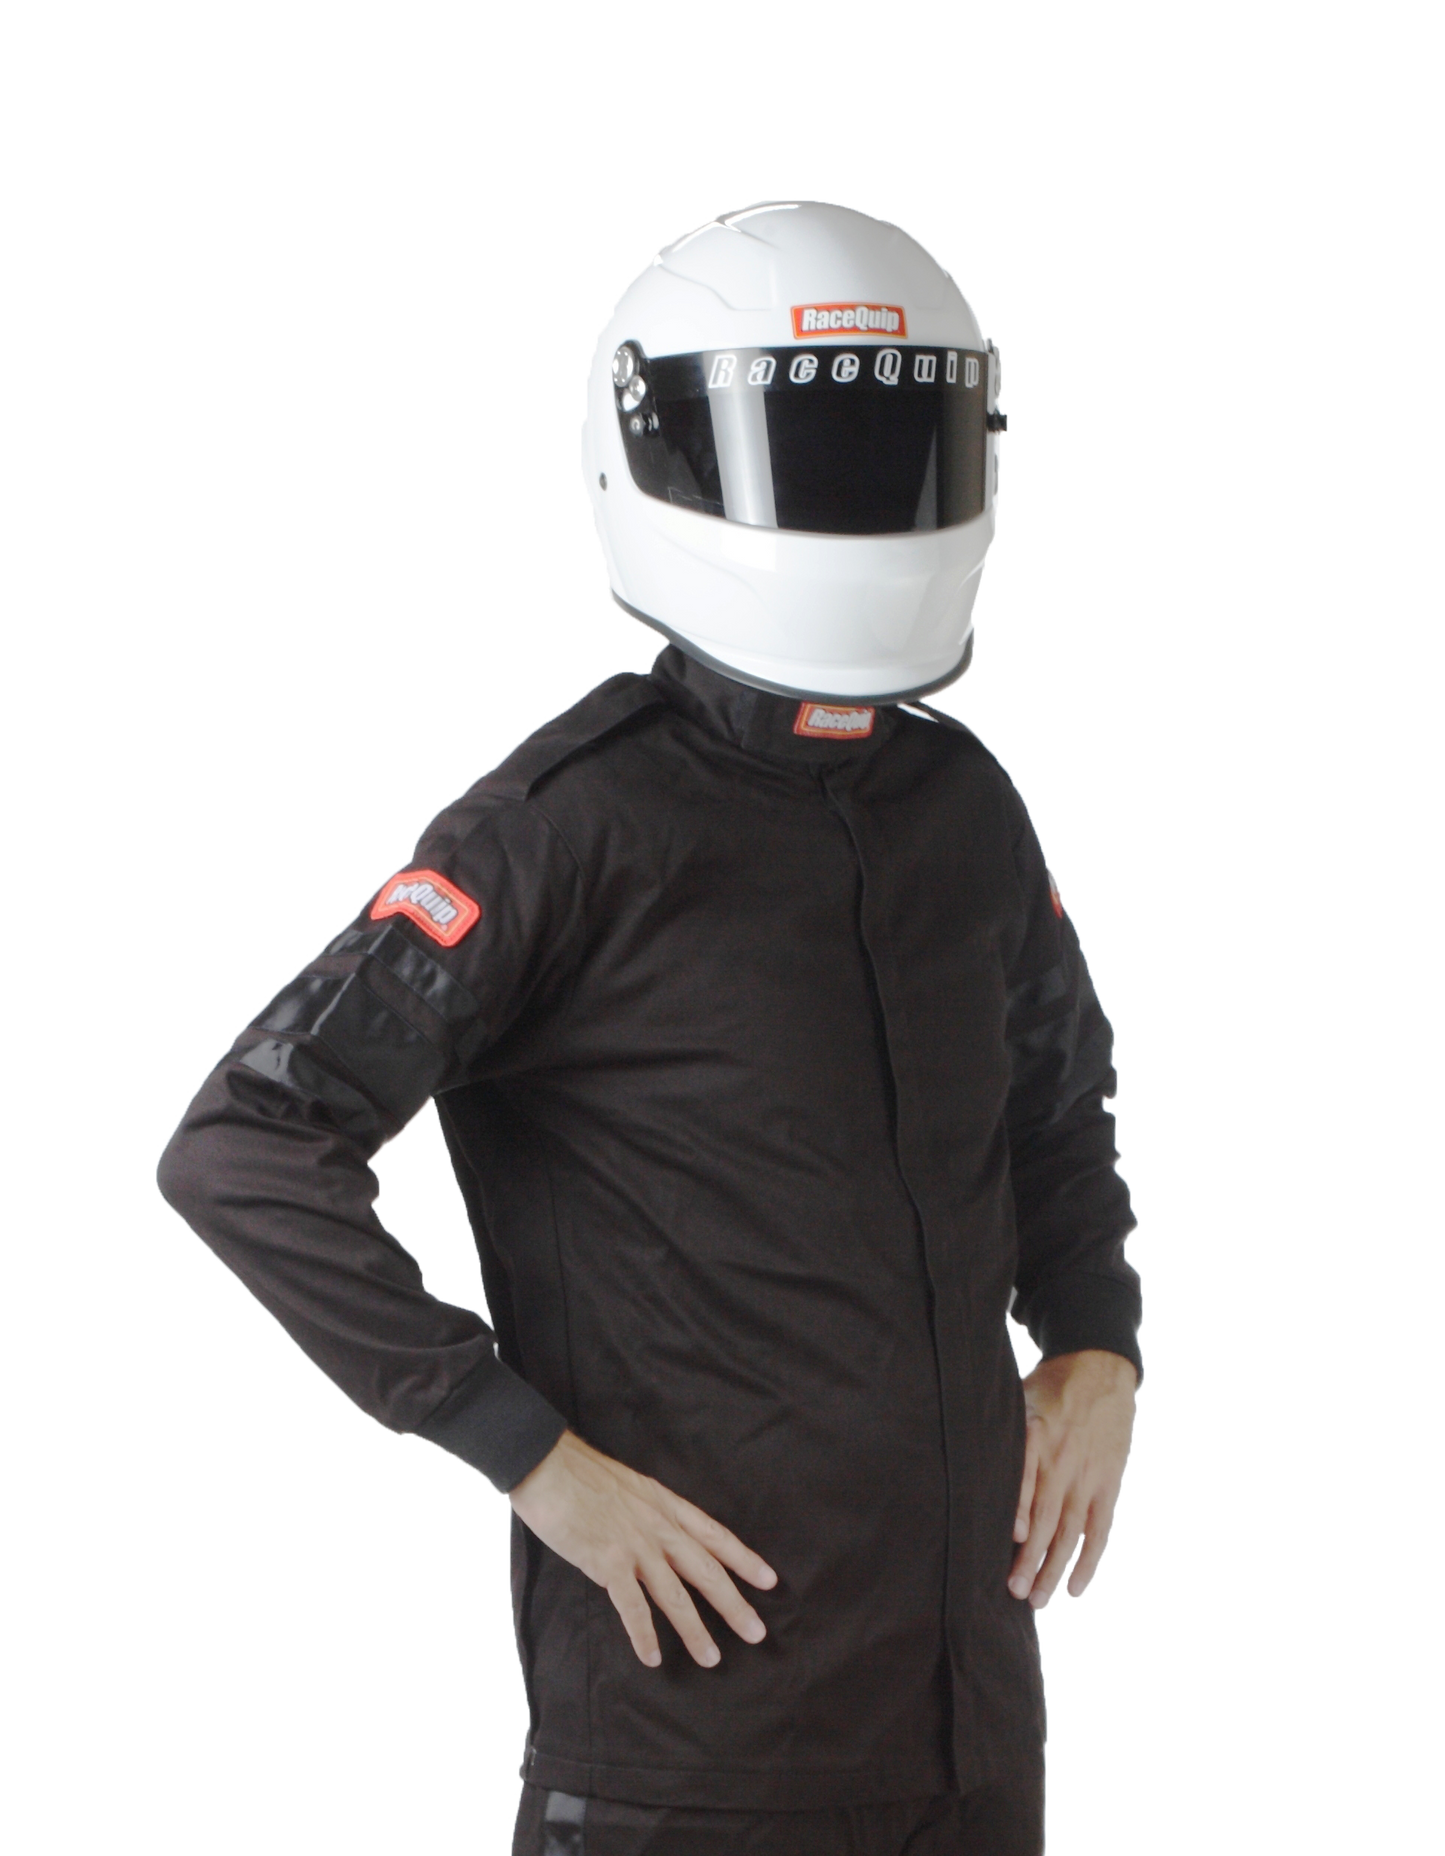 RaceQuip - Chaqueta de traje de fuego para piloto de carreras de una sola capa SFI 3.2A/ 1